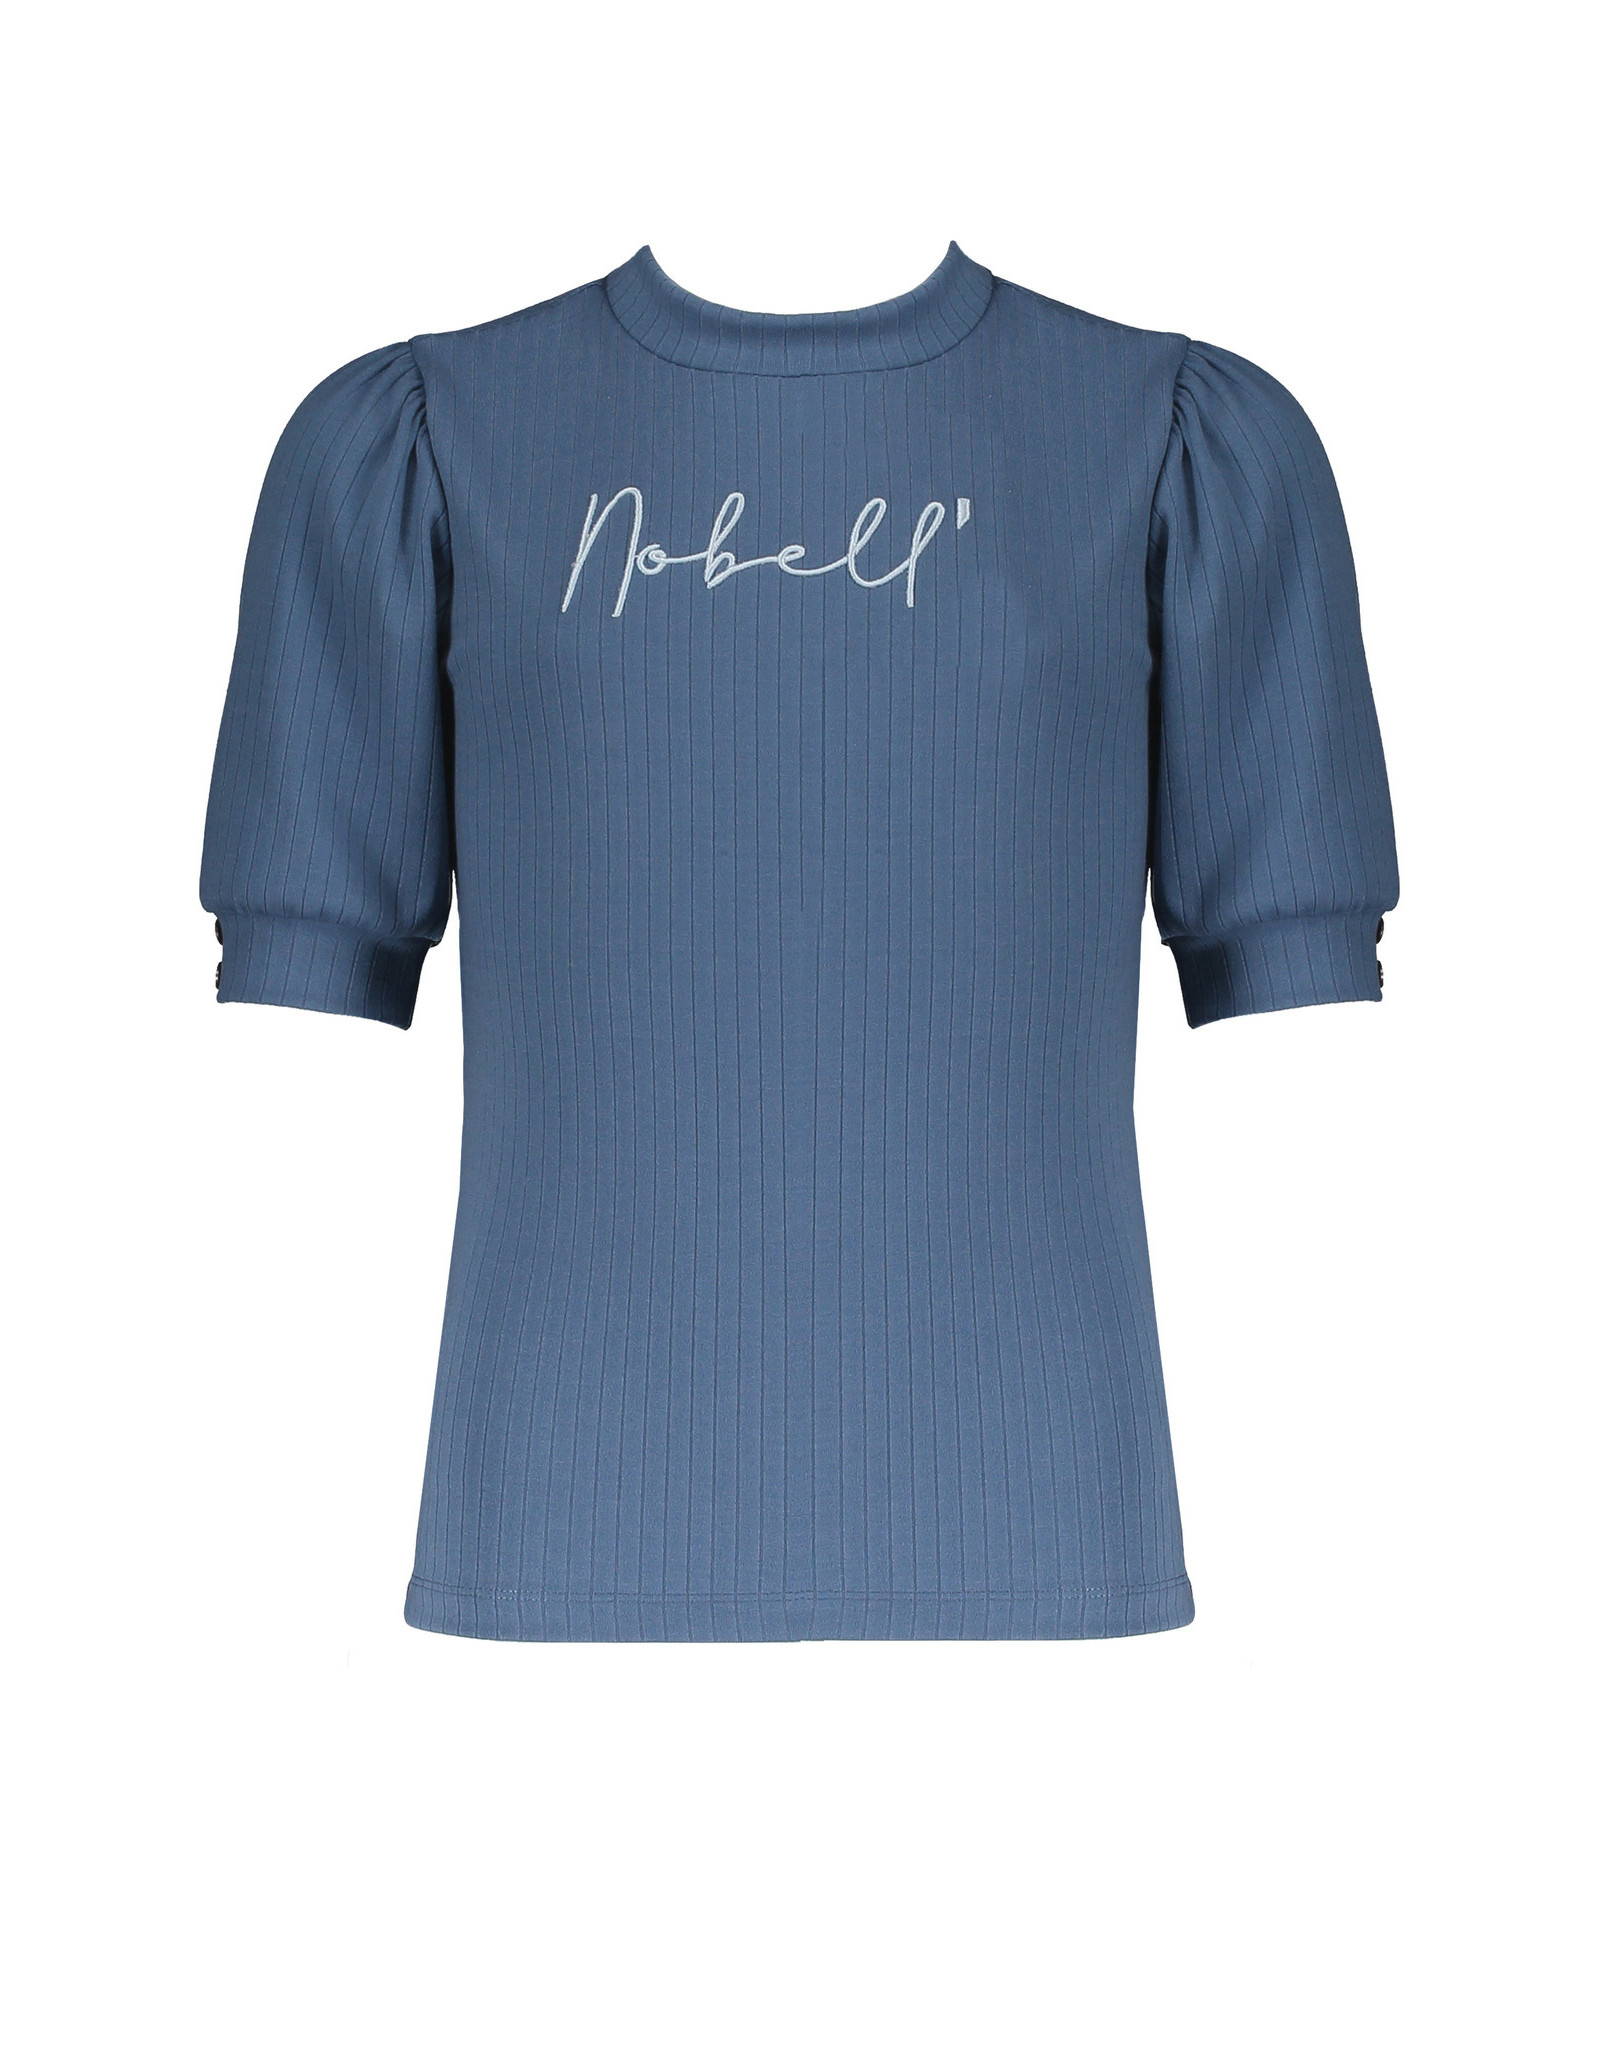 Nobell Nobell shirt 3401 blue fog